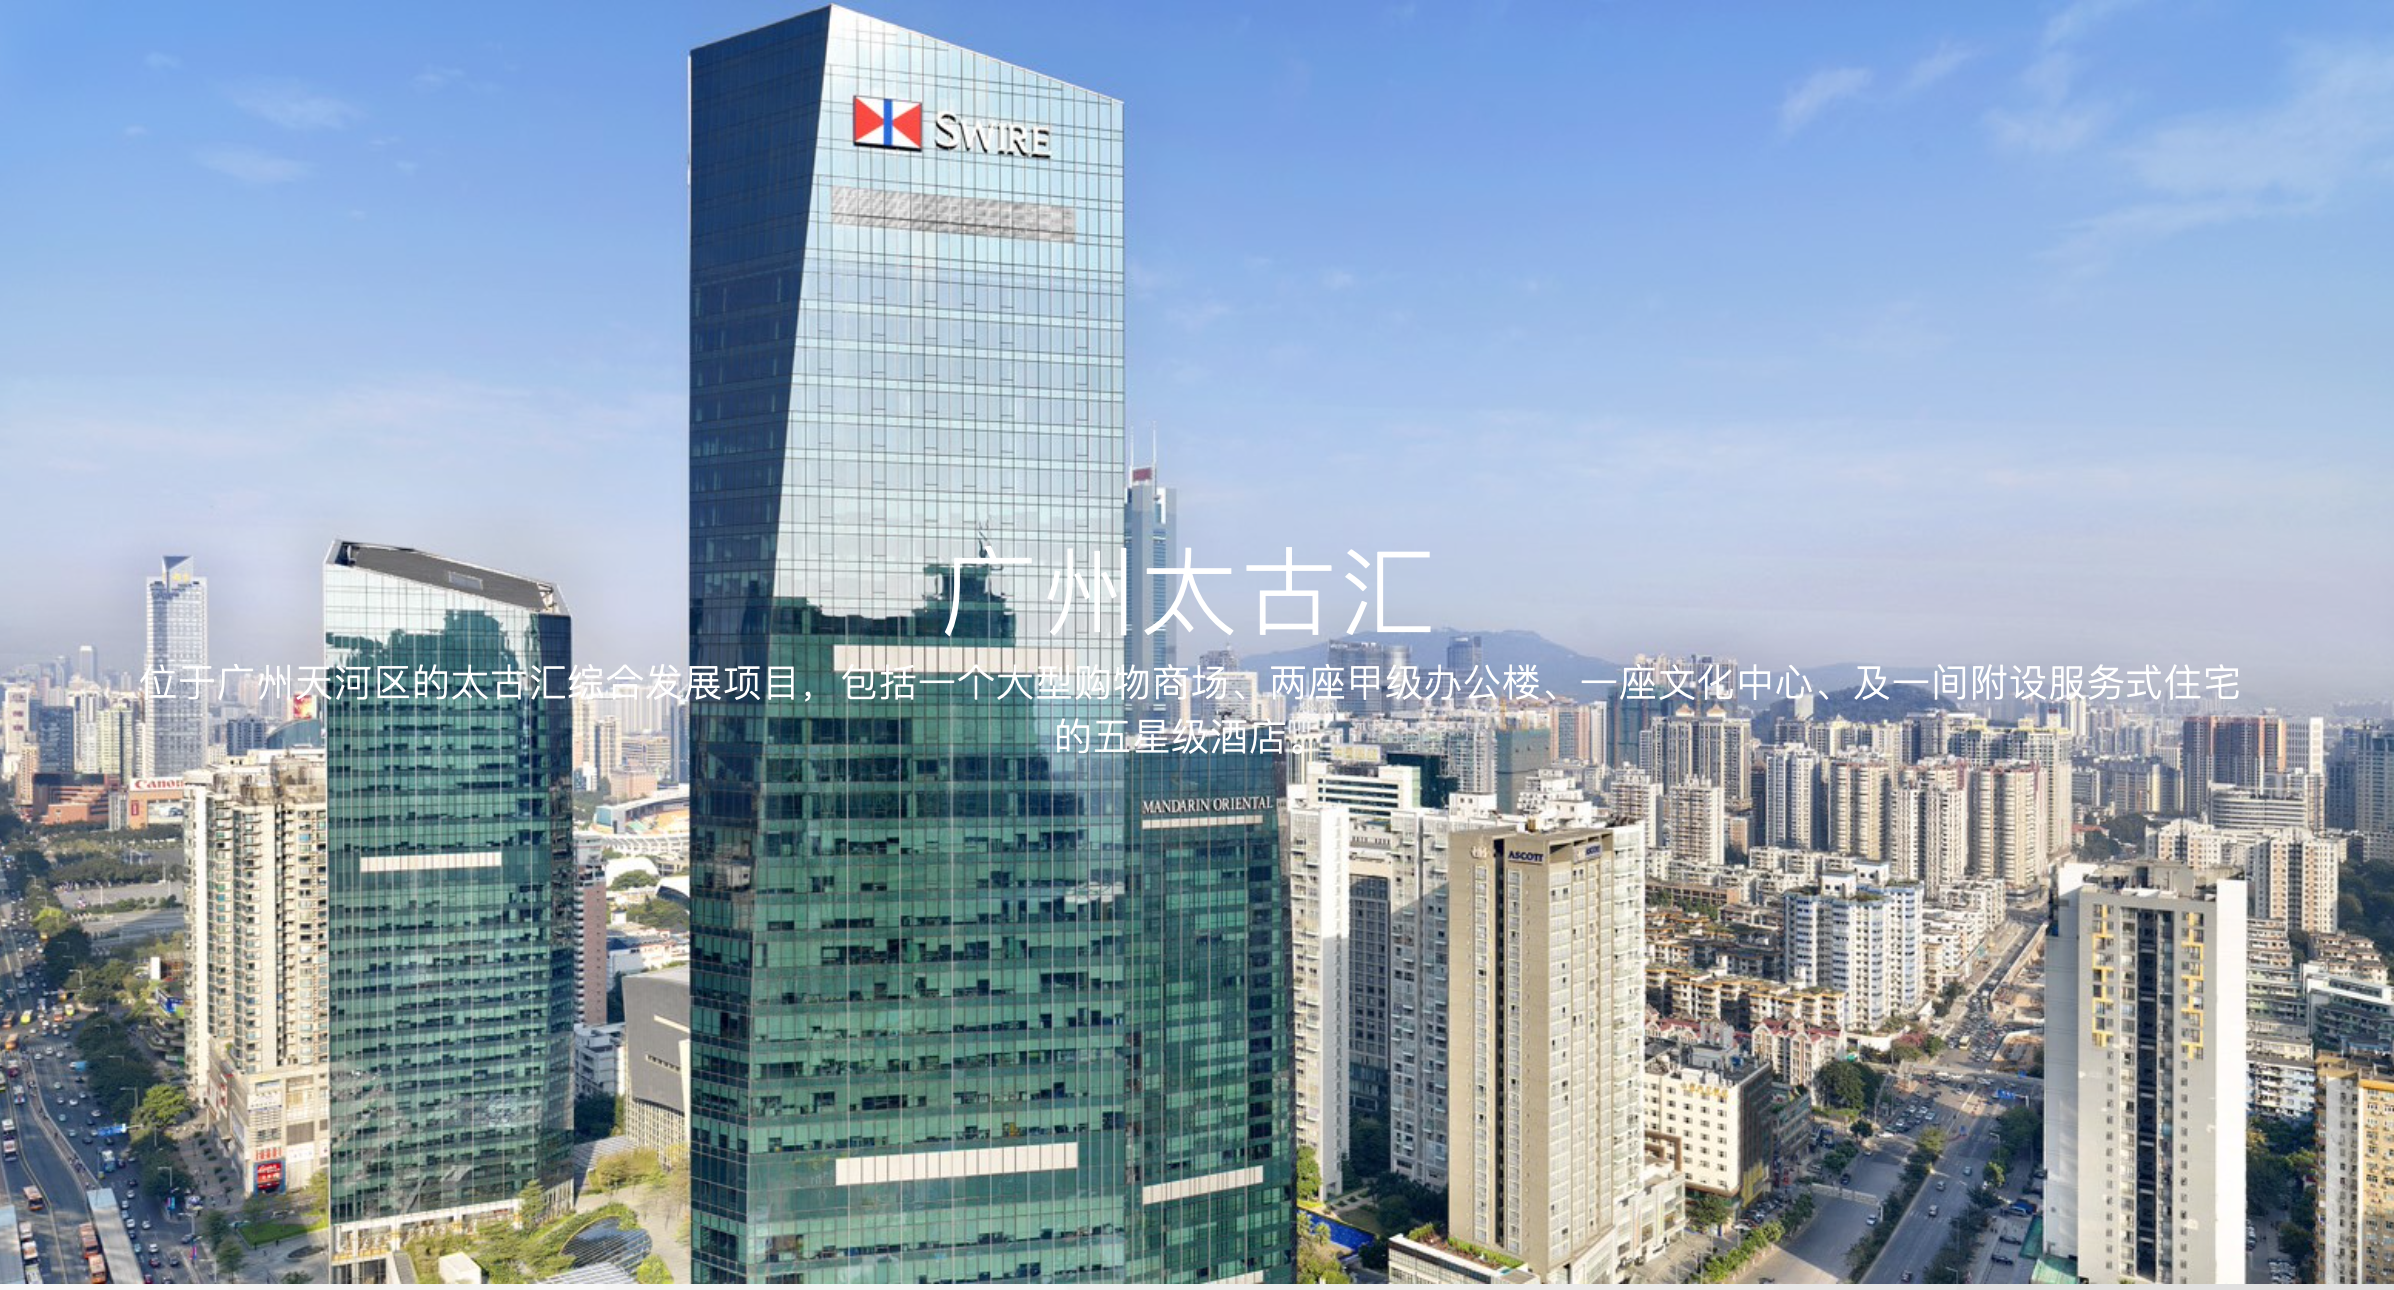 Guangzhou: No Longer A Third-Rate Luxury Market?